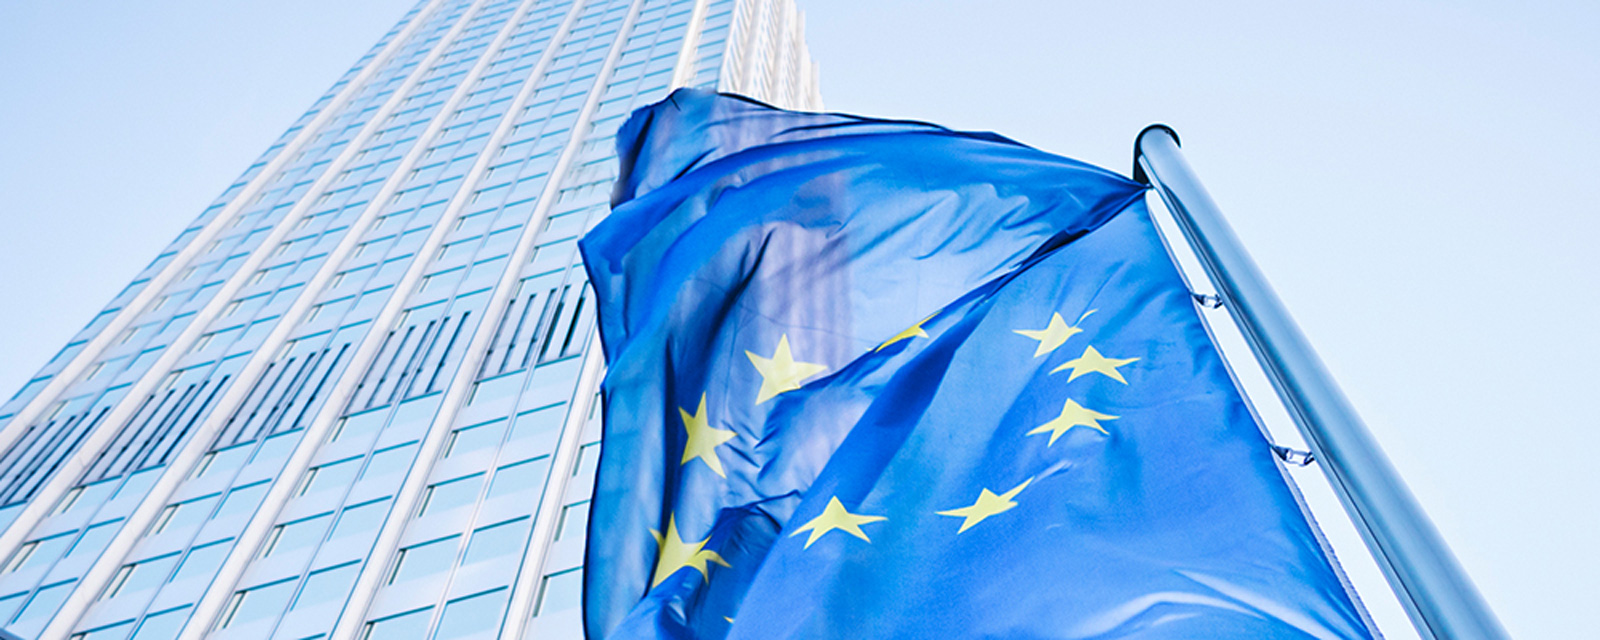 EU flag symbolizes European Economic Policy; Source: iStock.com/instamatics